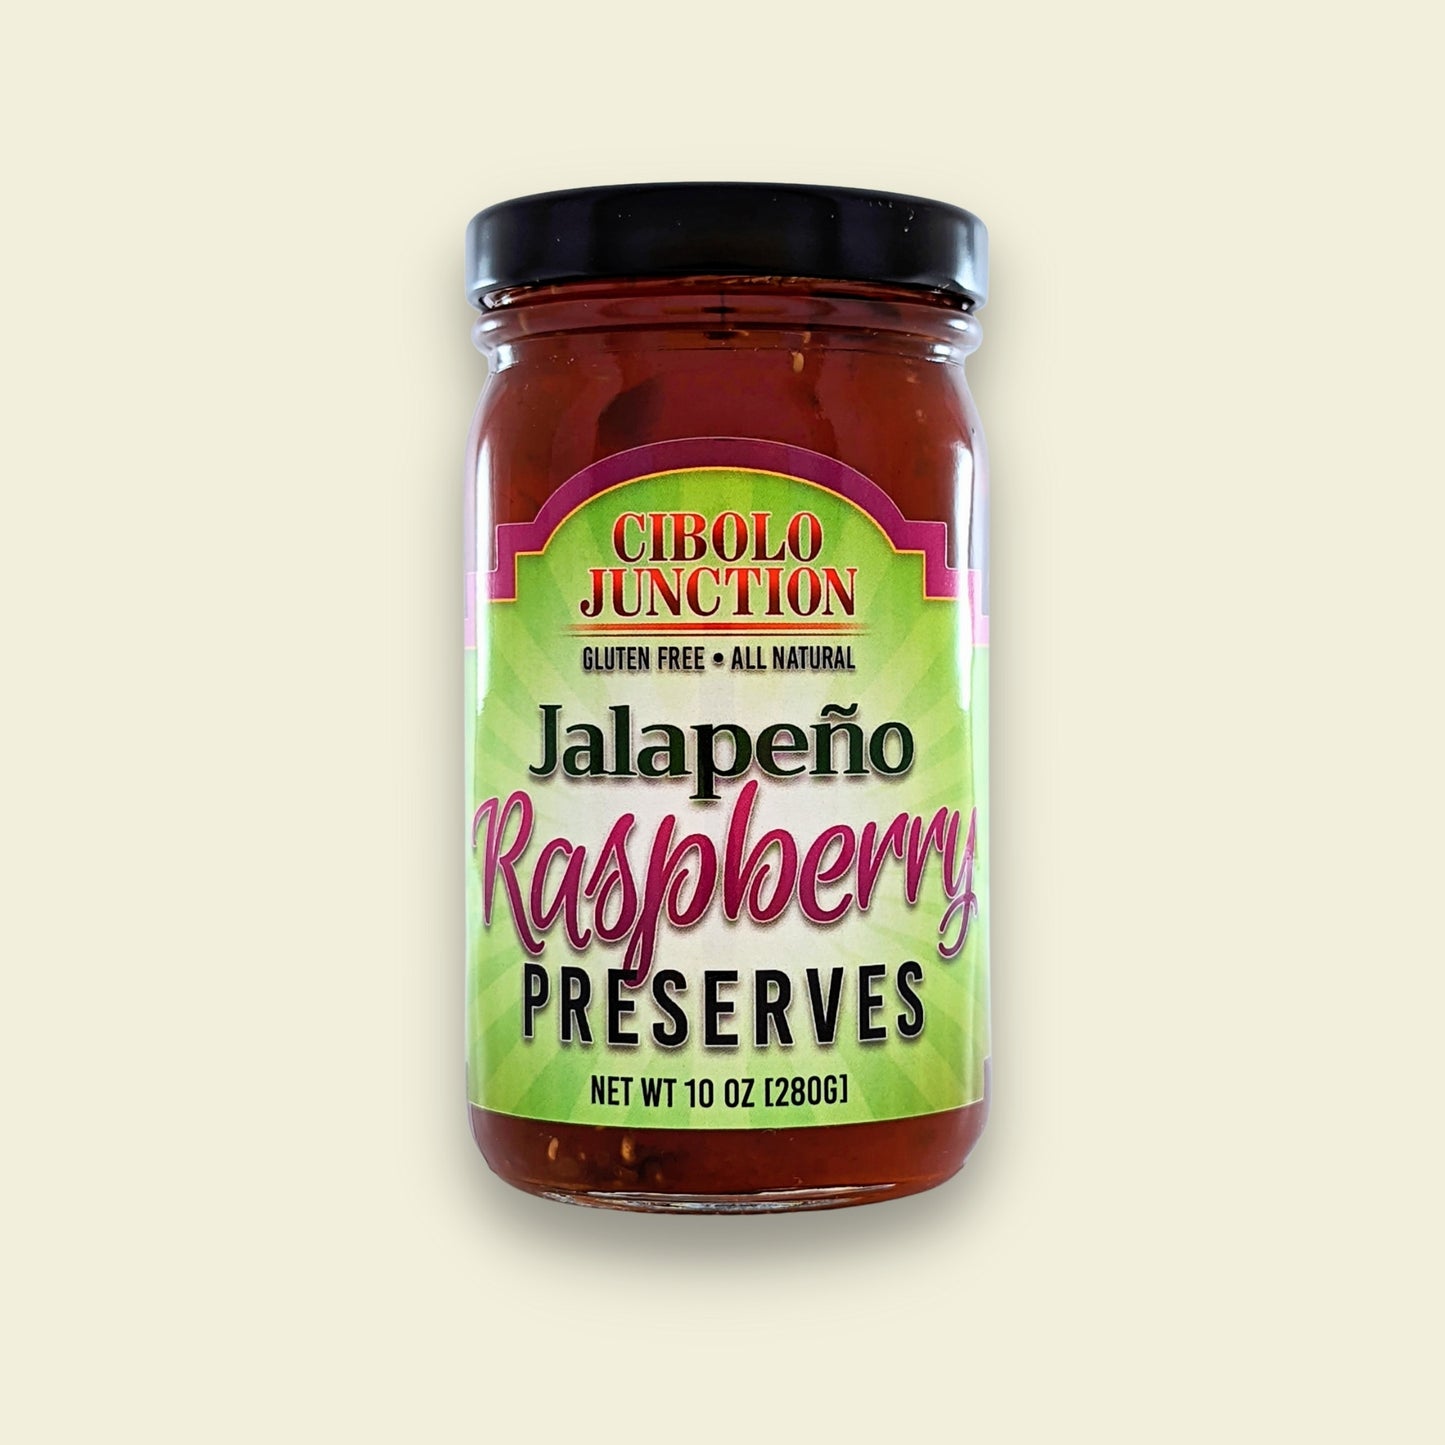 Jalapeño Raspberry Preserves